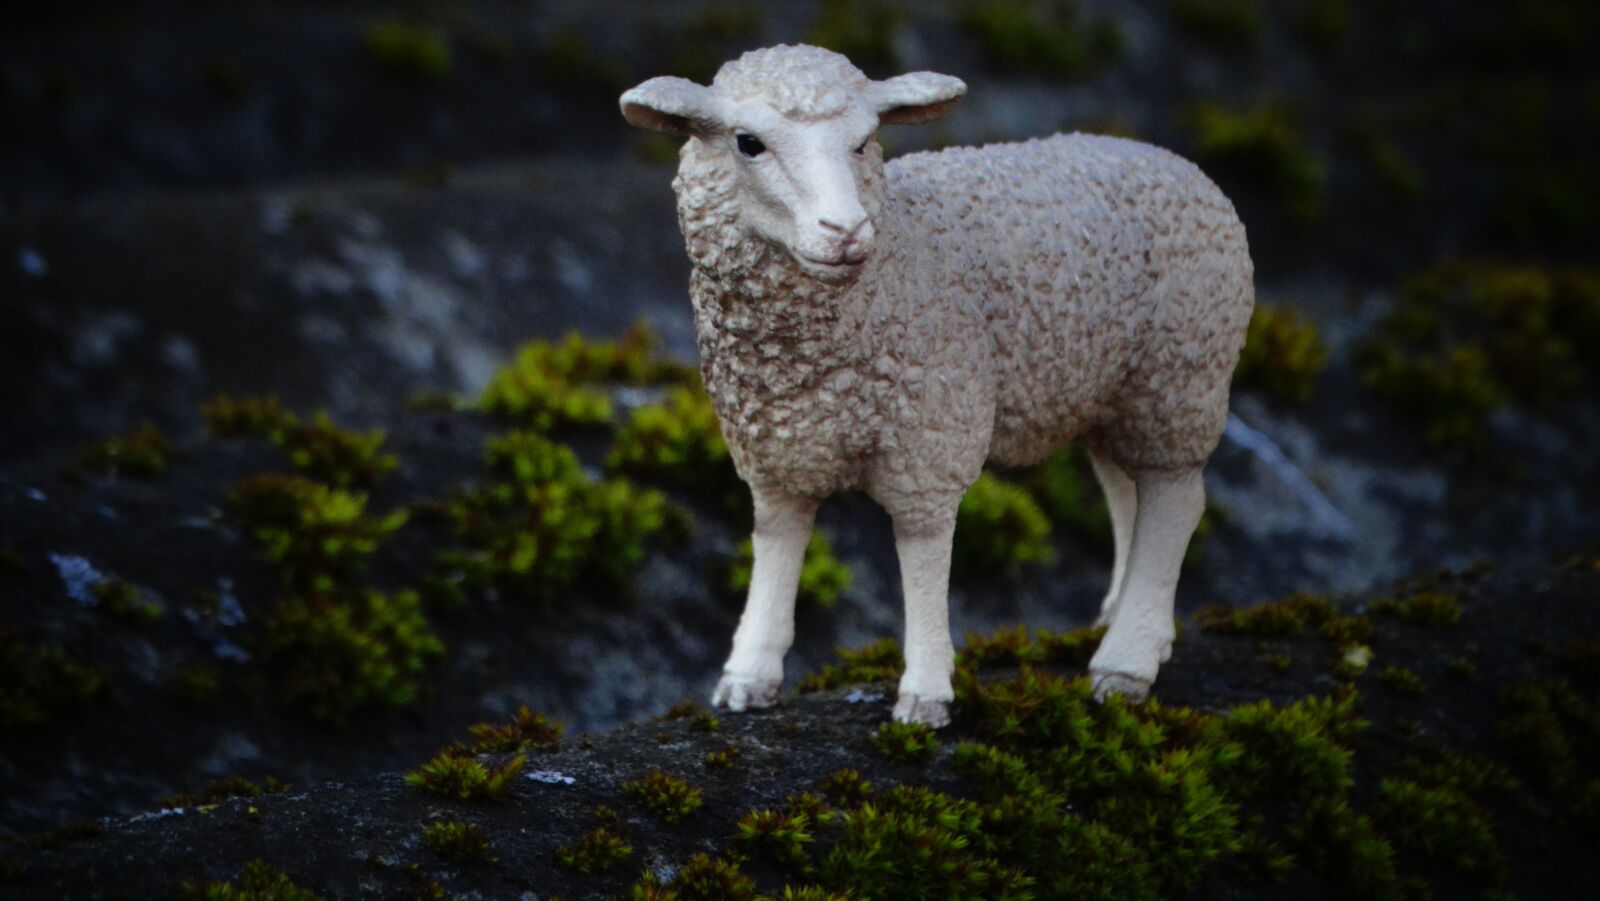 Sony Cyber-shot DSC-HX300 sample photo. Schleichtier, sheep, animals photography